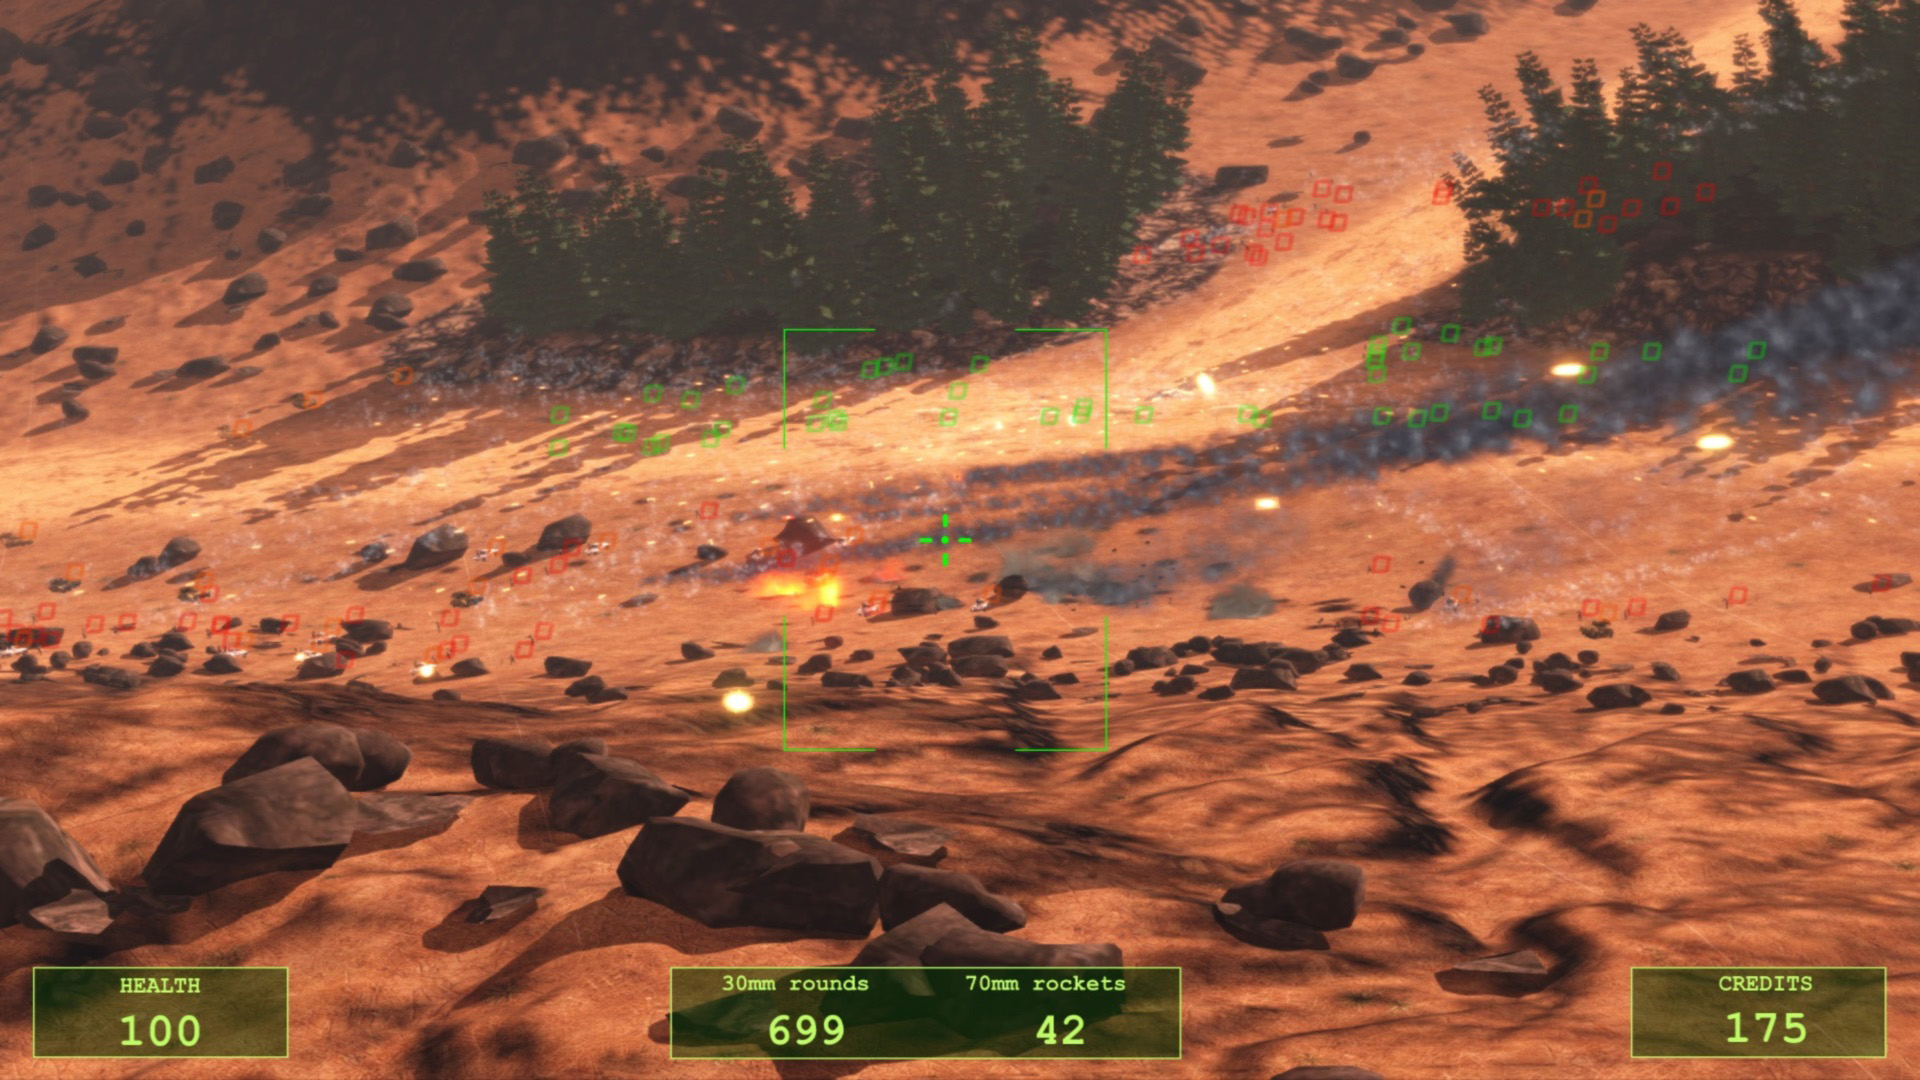 Aerial Destruction screenshot